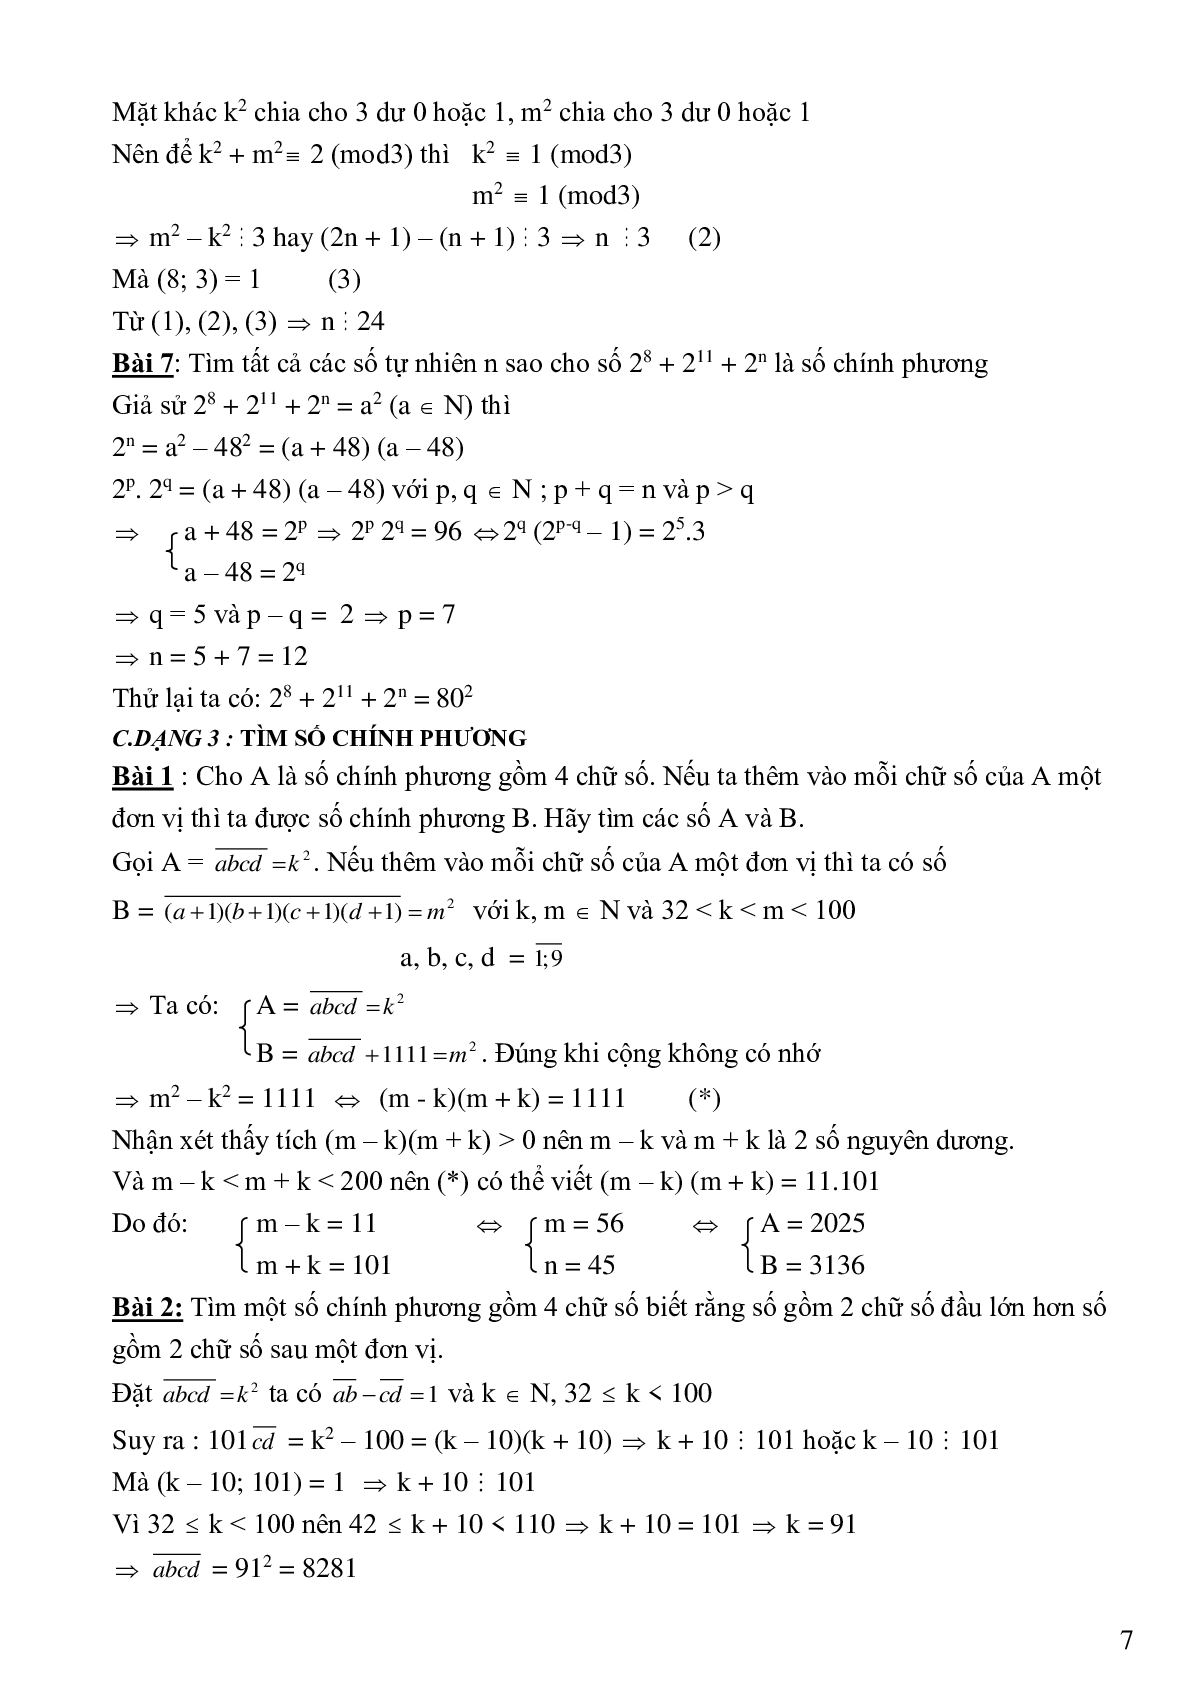 Bài tập cơ bản và nâng cao số chính phương (trang 7)